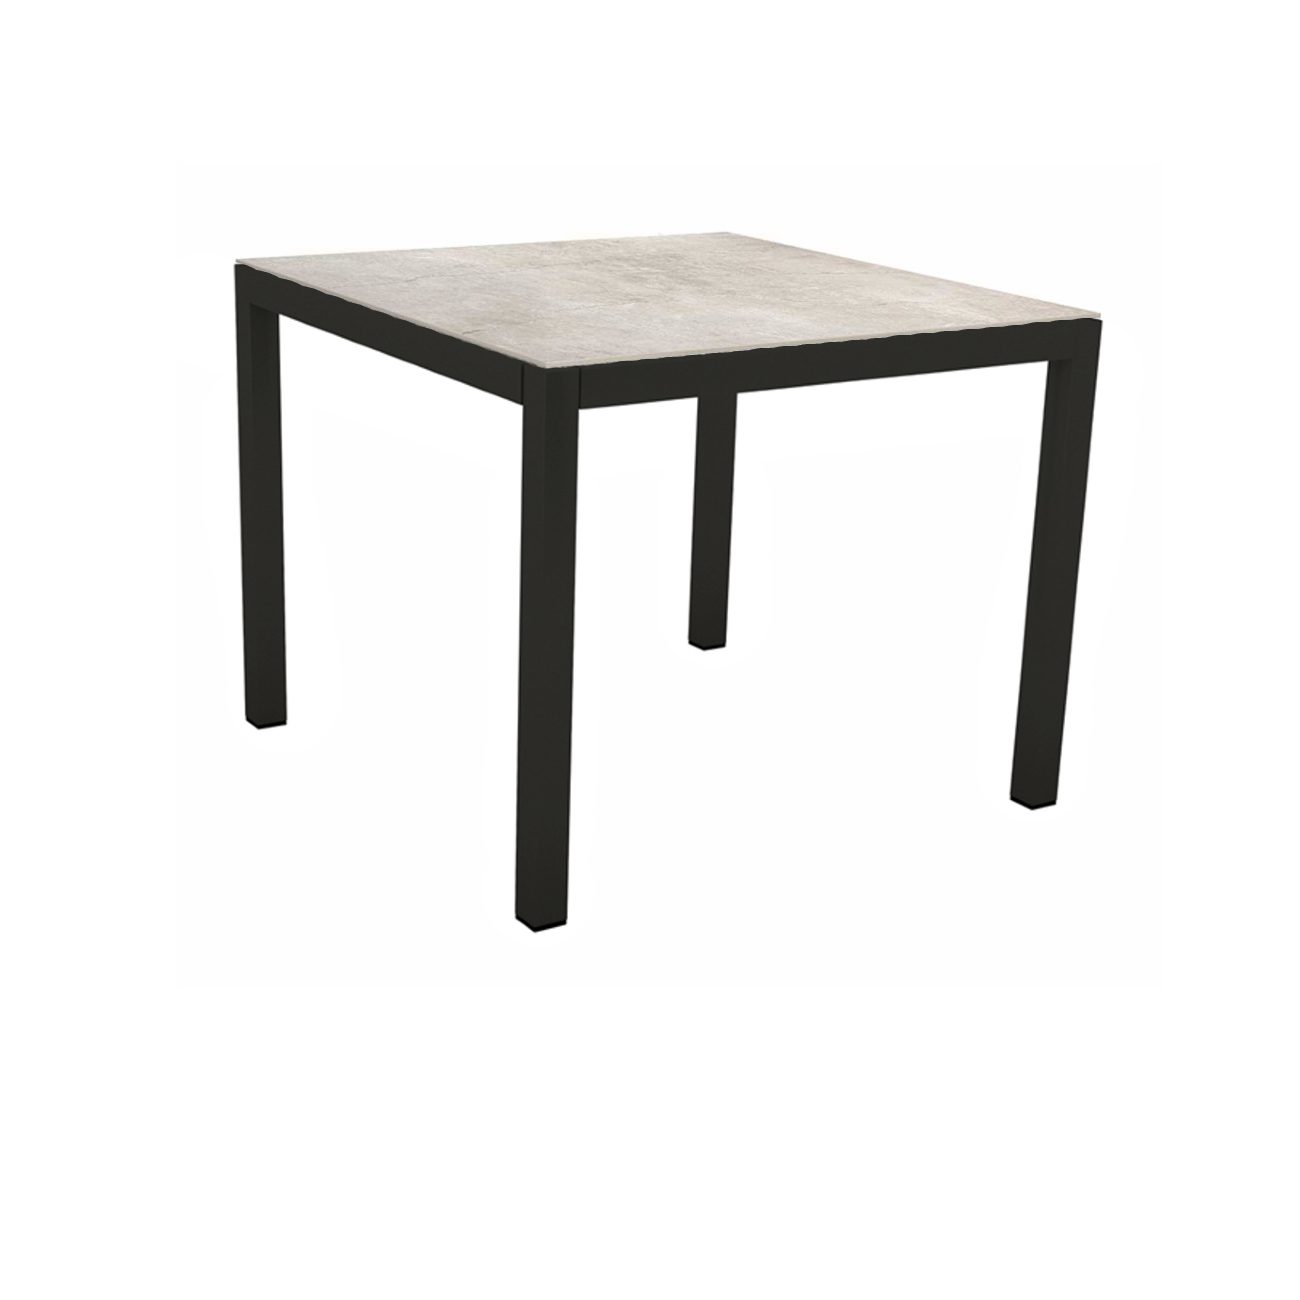 Stern Tischsystem, Gestell Aluminium schwarz matt, Tischplatte Dekton Lava hellgrau, 90x90 cm